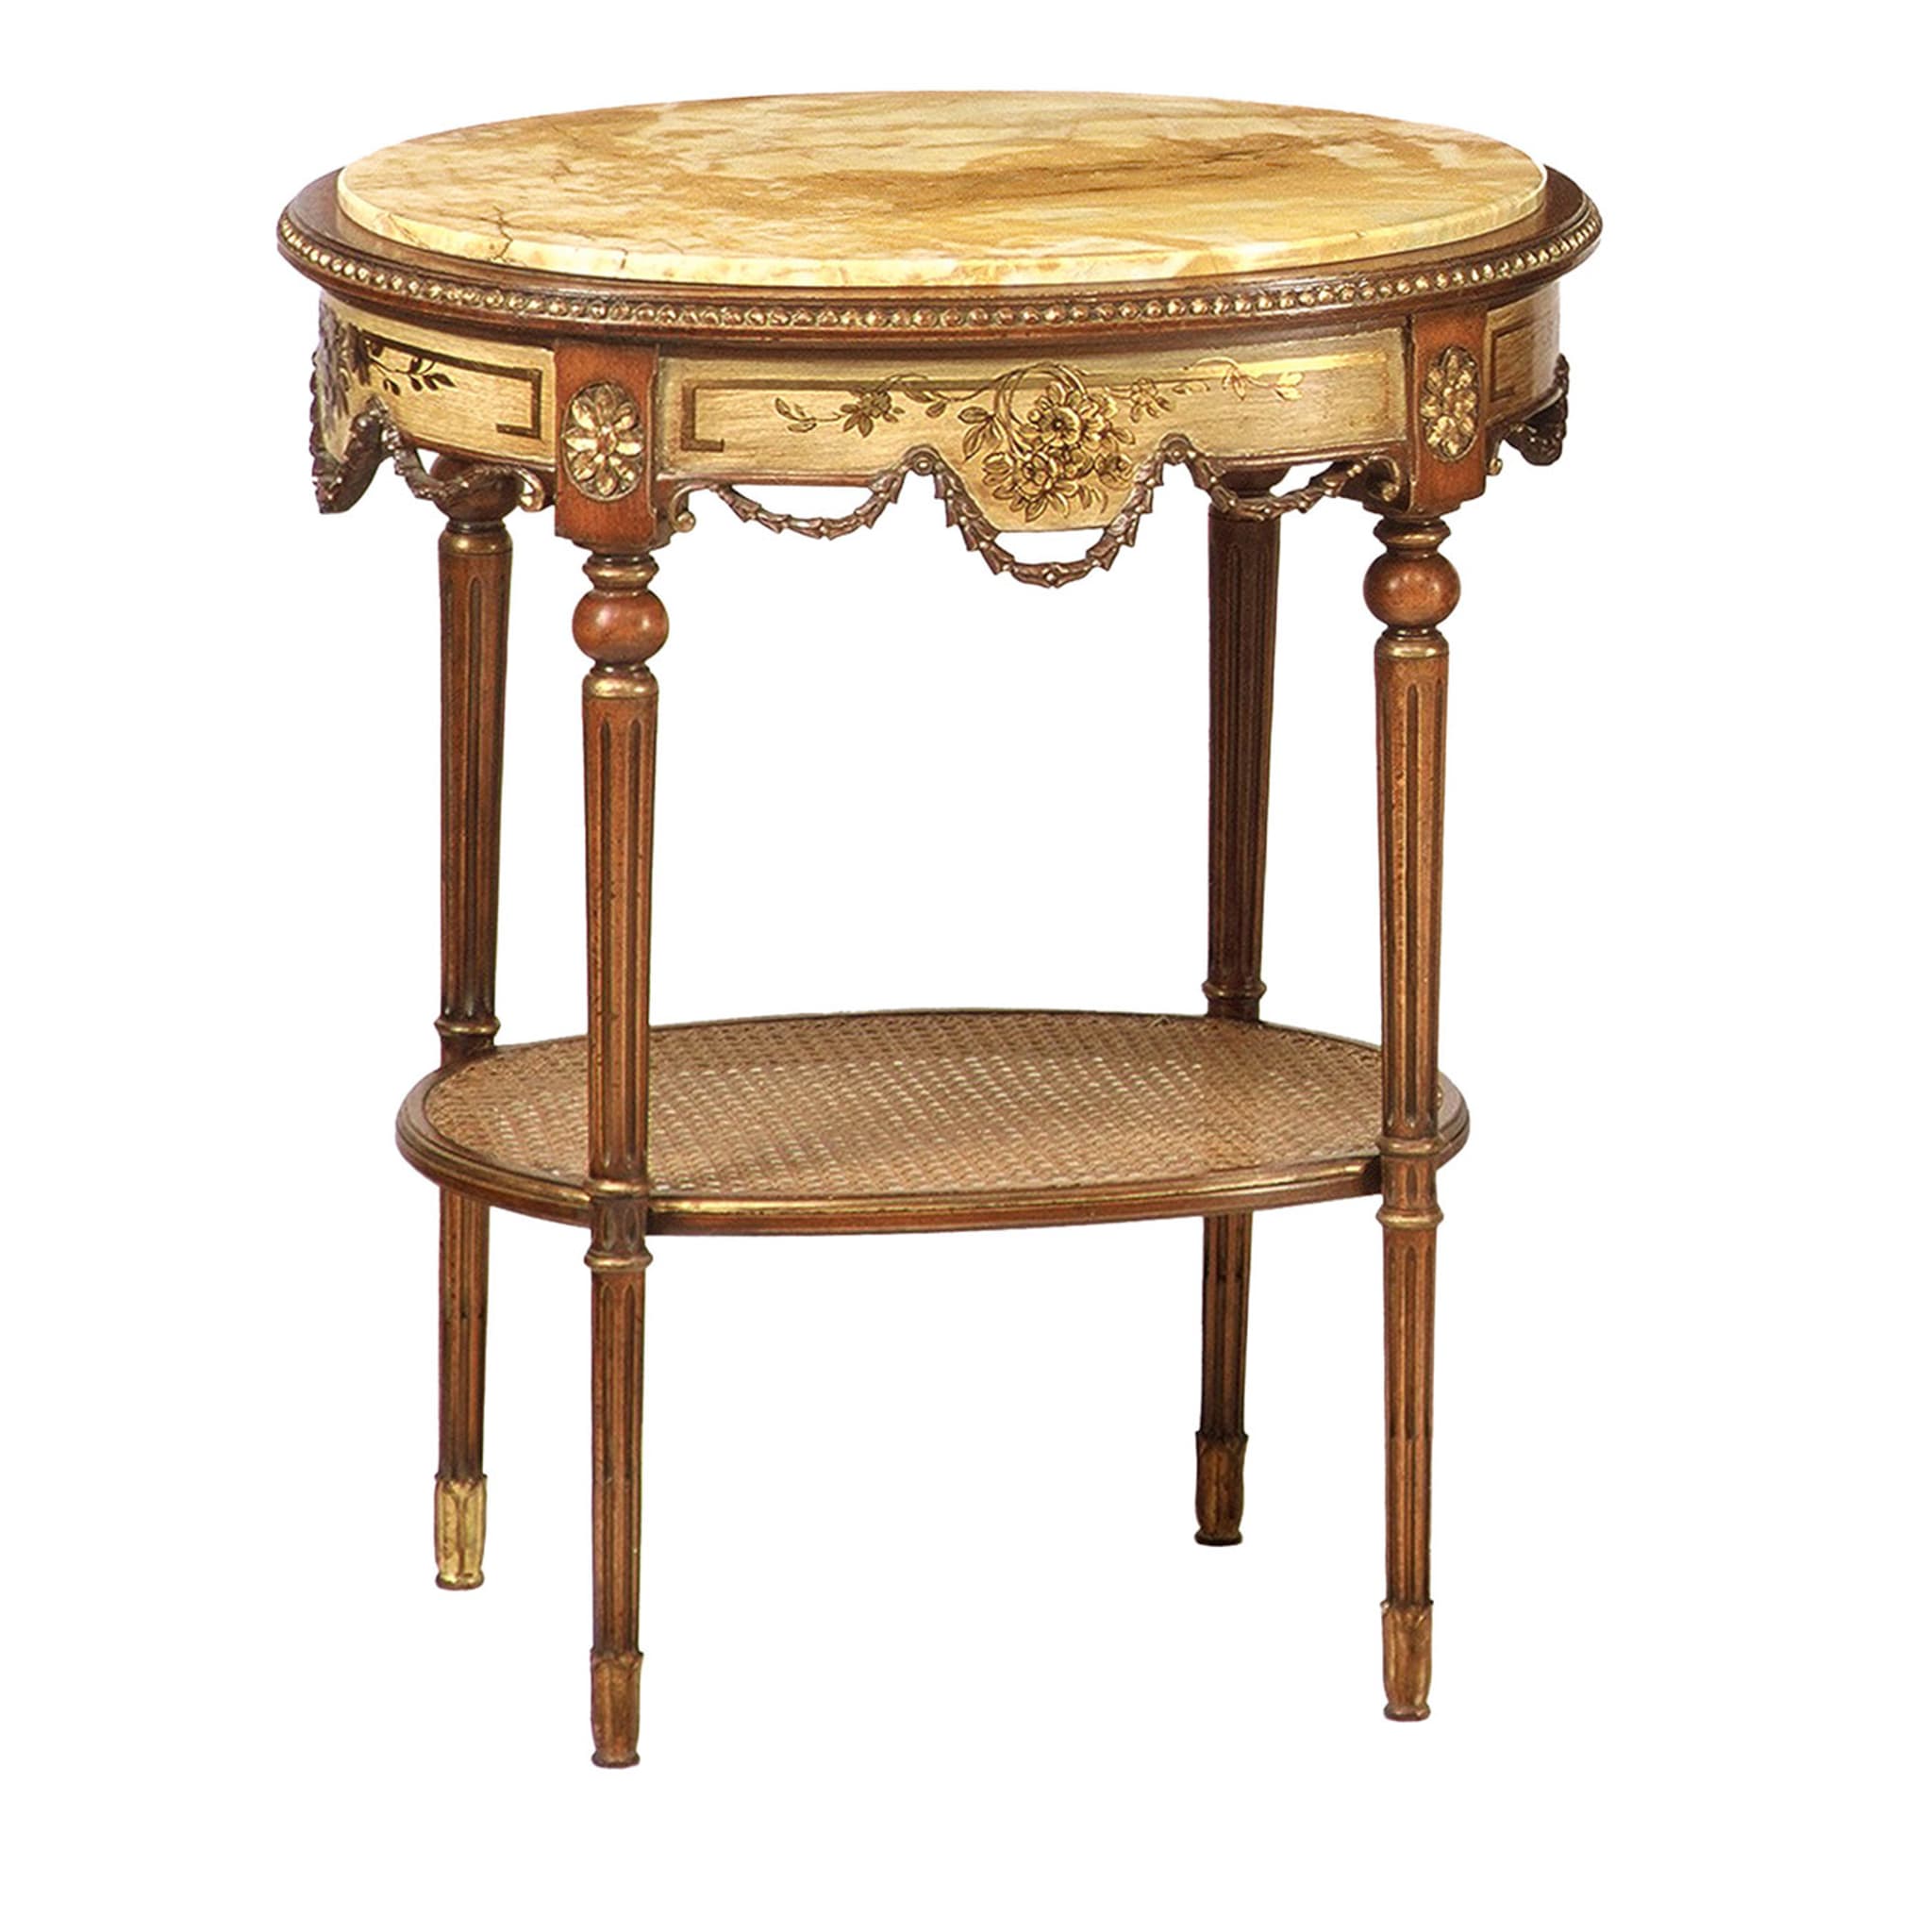 Table d'appoint ovale de style néoclassique français #2 - Vue principale